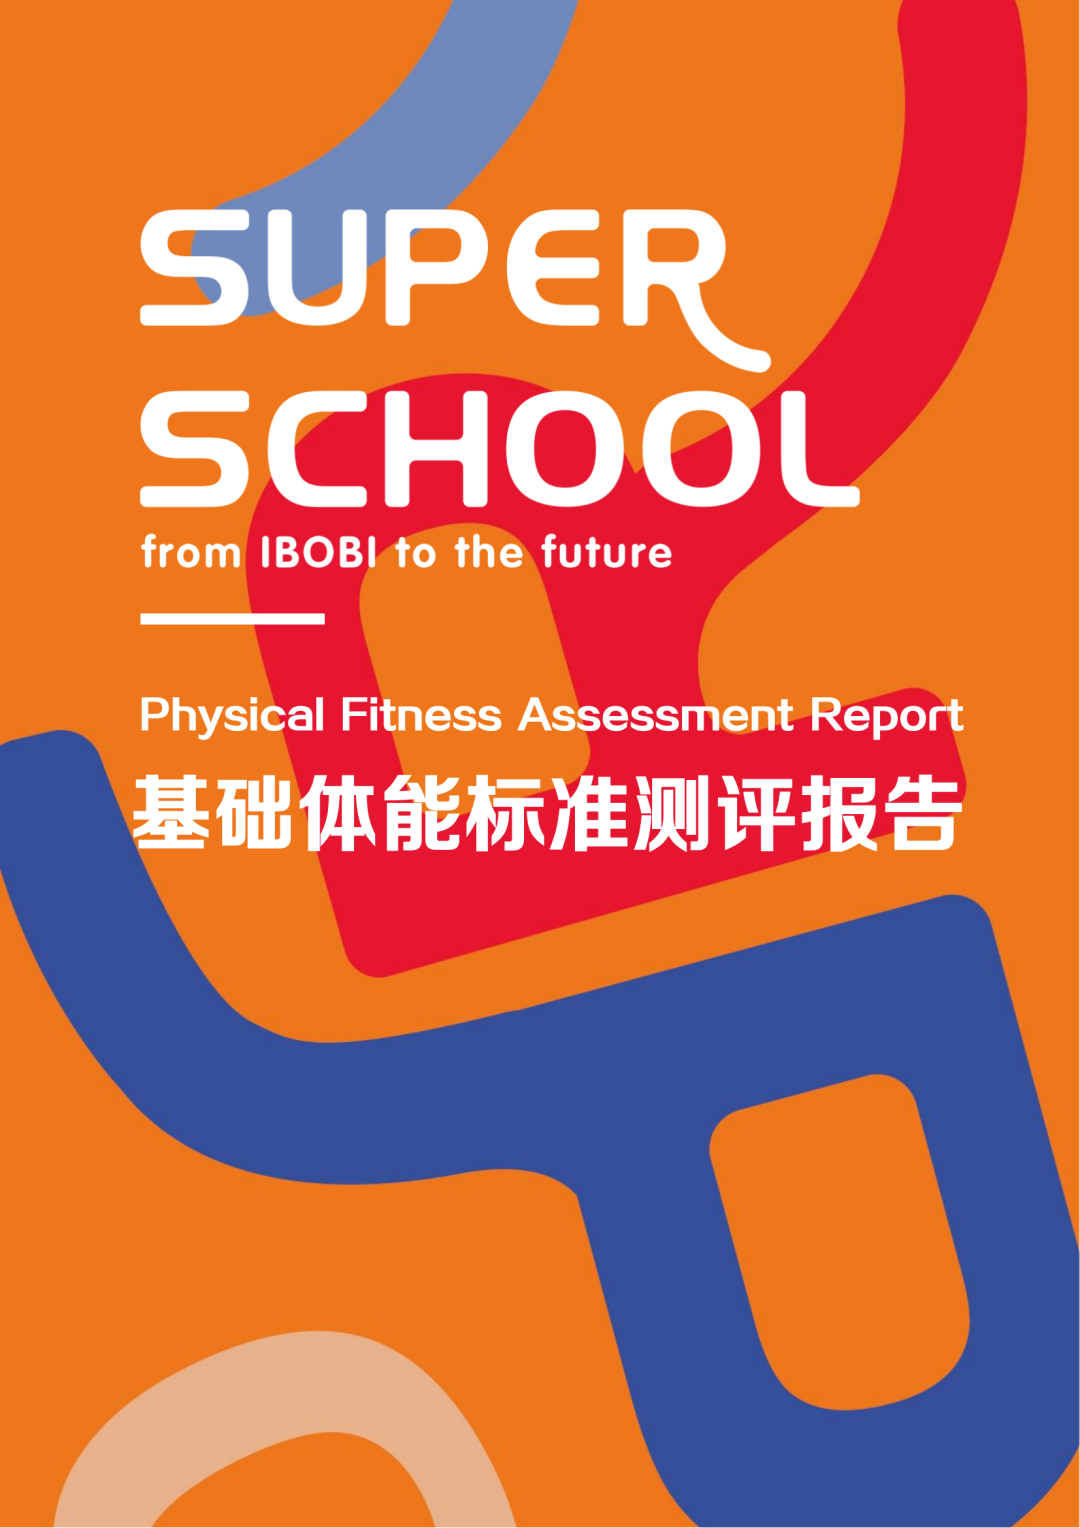 小小未来创新领袖的2023 | IBOBI SUPER SCHOOL 时光回忆录